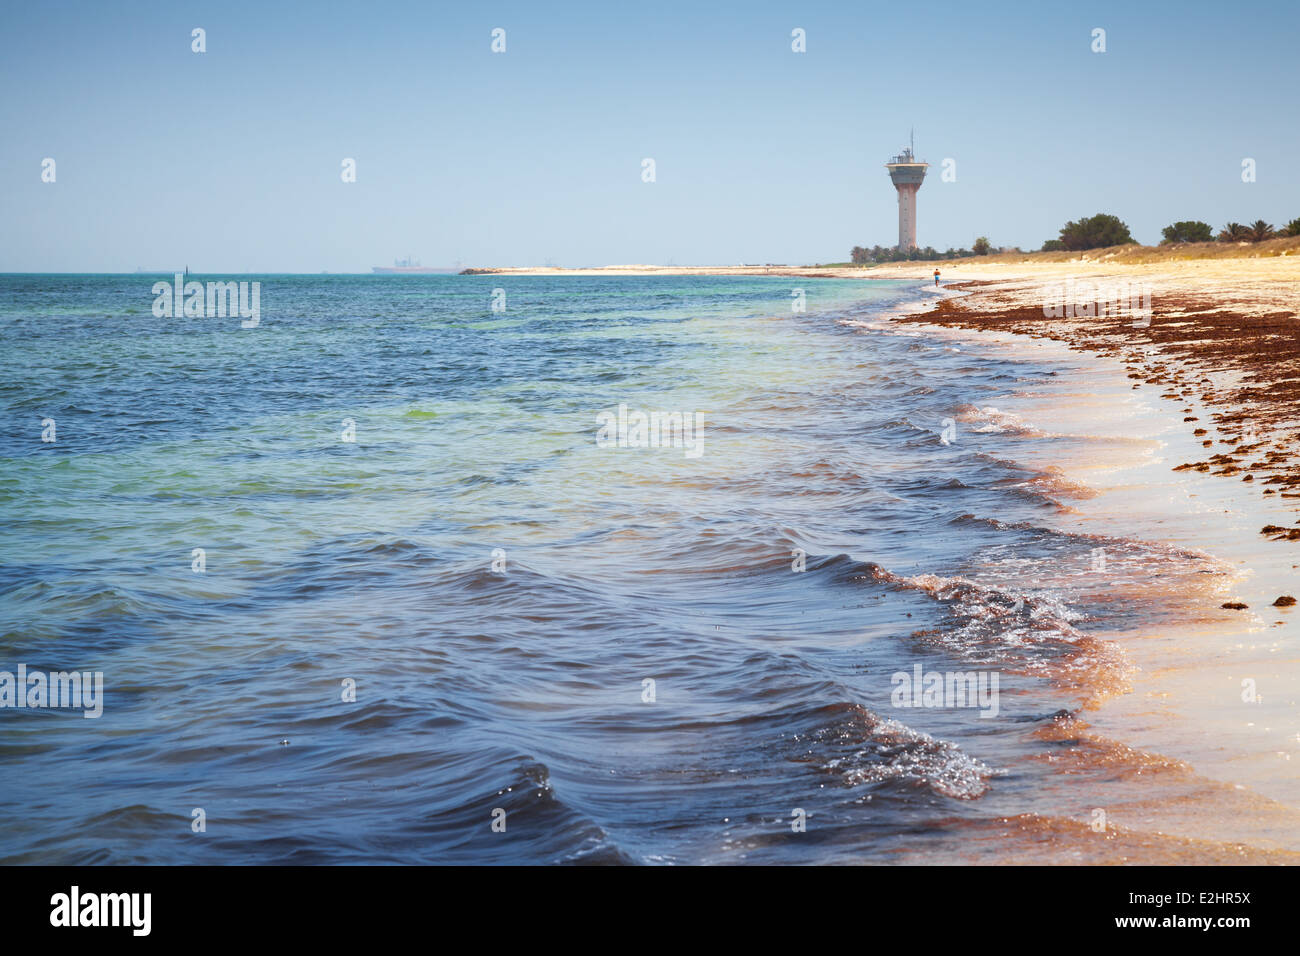 Coast of Persian Gulf. Ras Tanura, Saudi Arabia Stock Photo